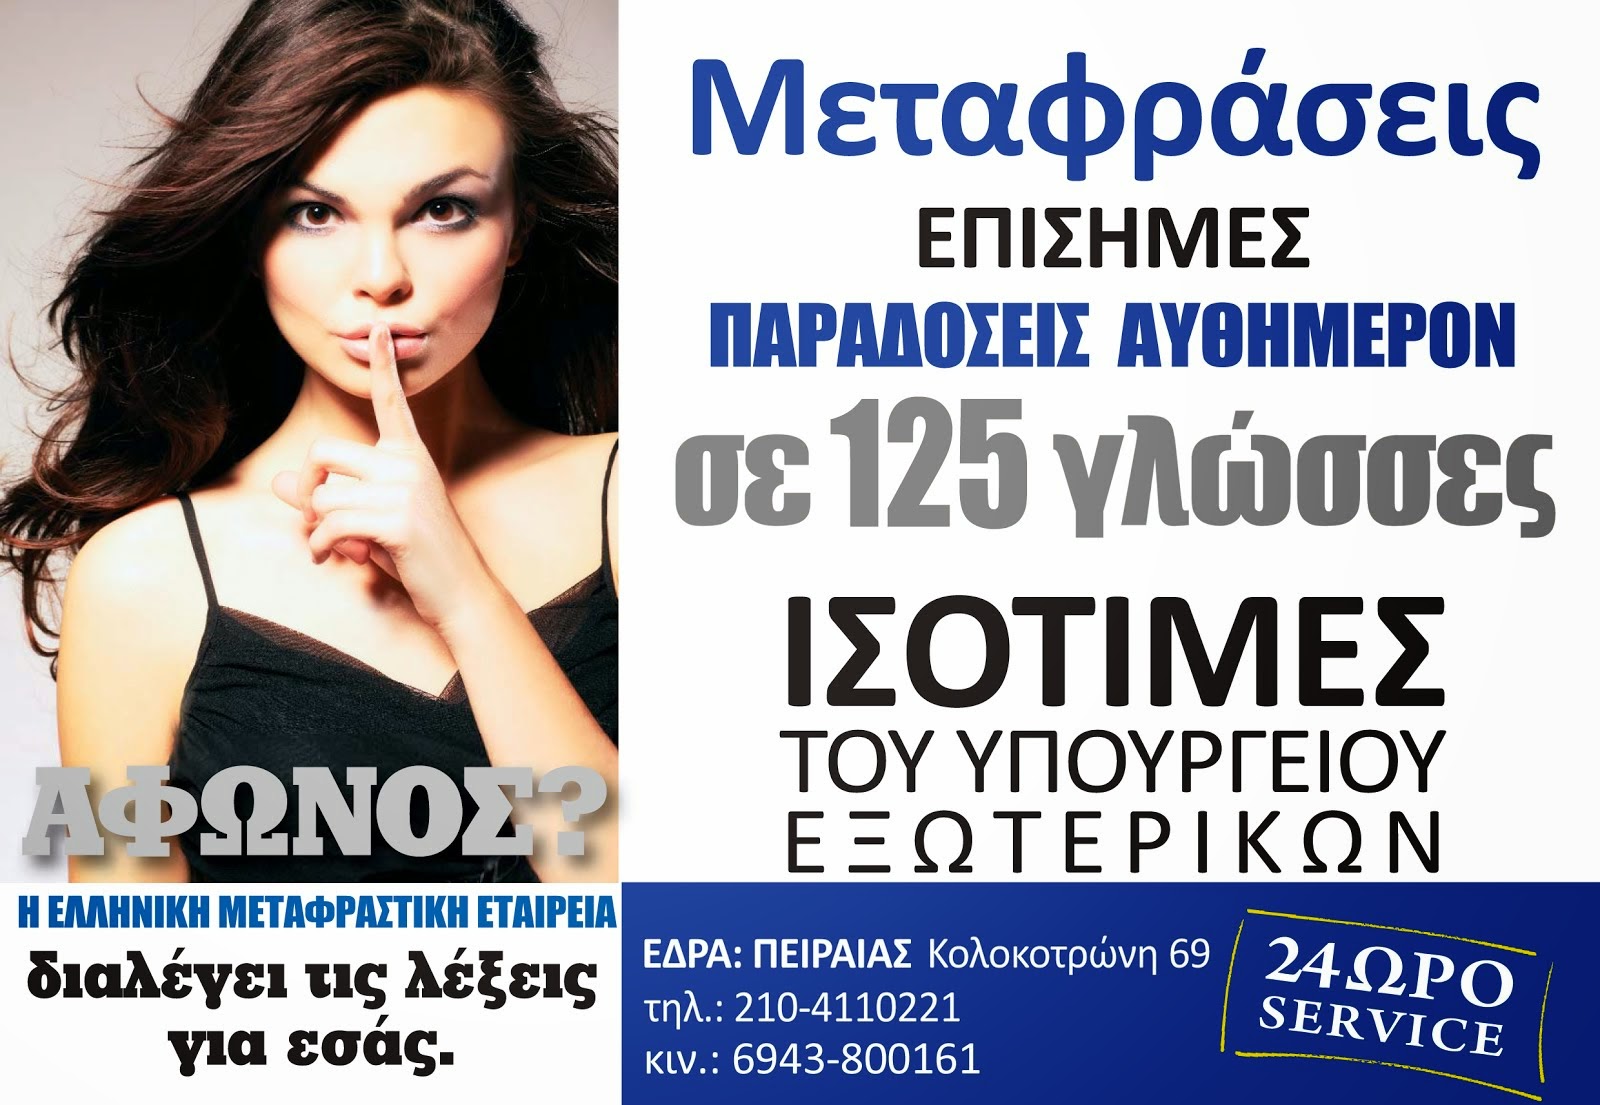 Ελληνική Μεταφραστική Εταιρεία